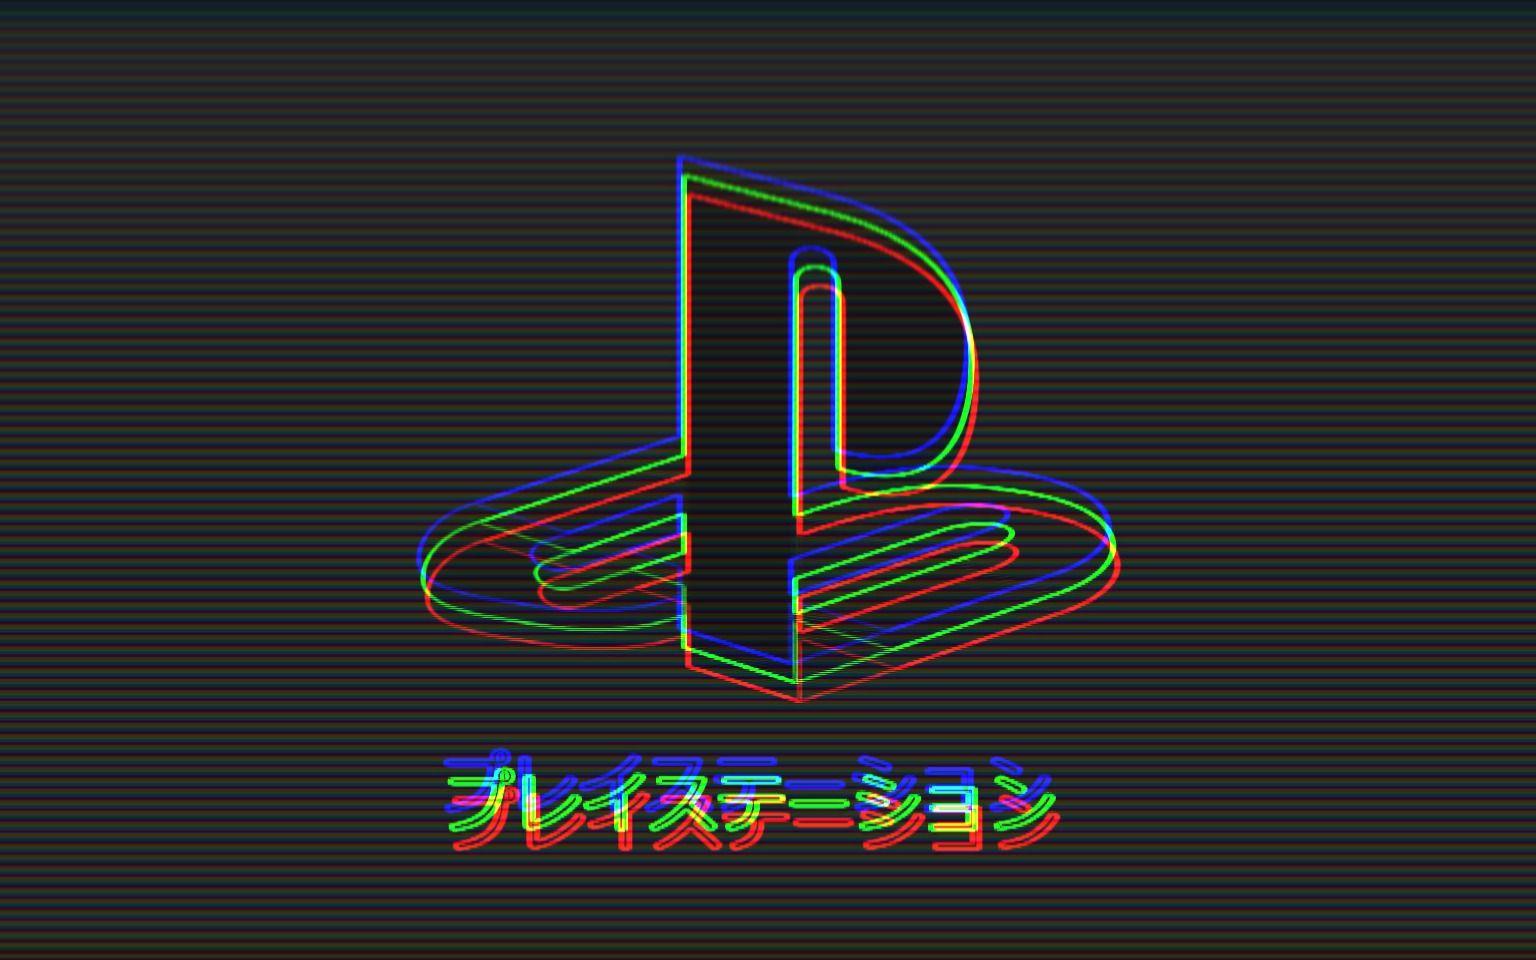 PlayStation. Glitch art, Playstation logo